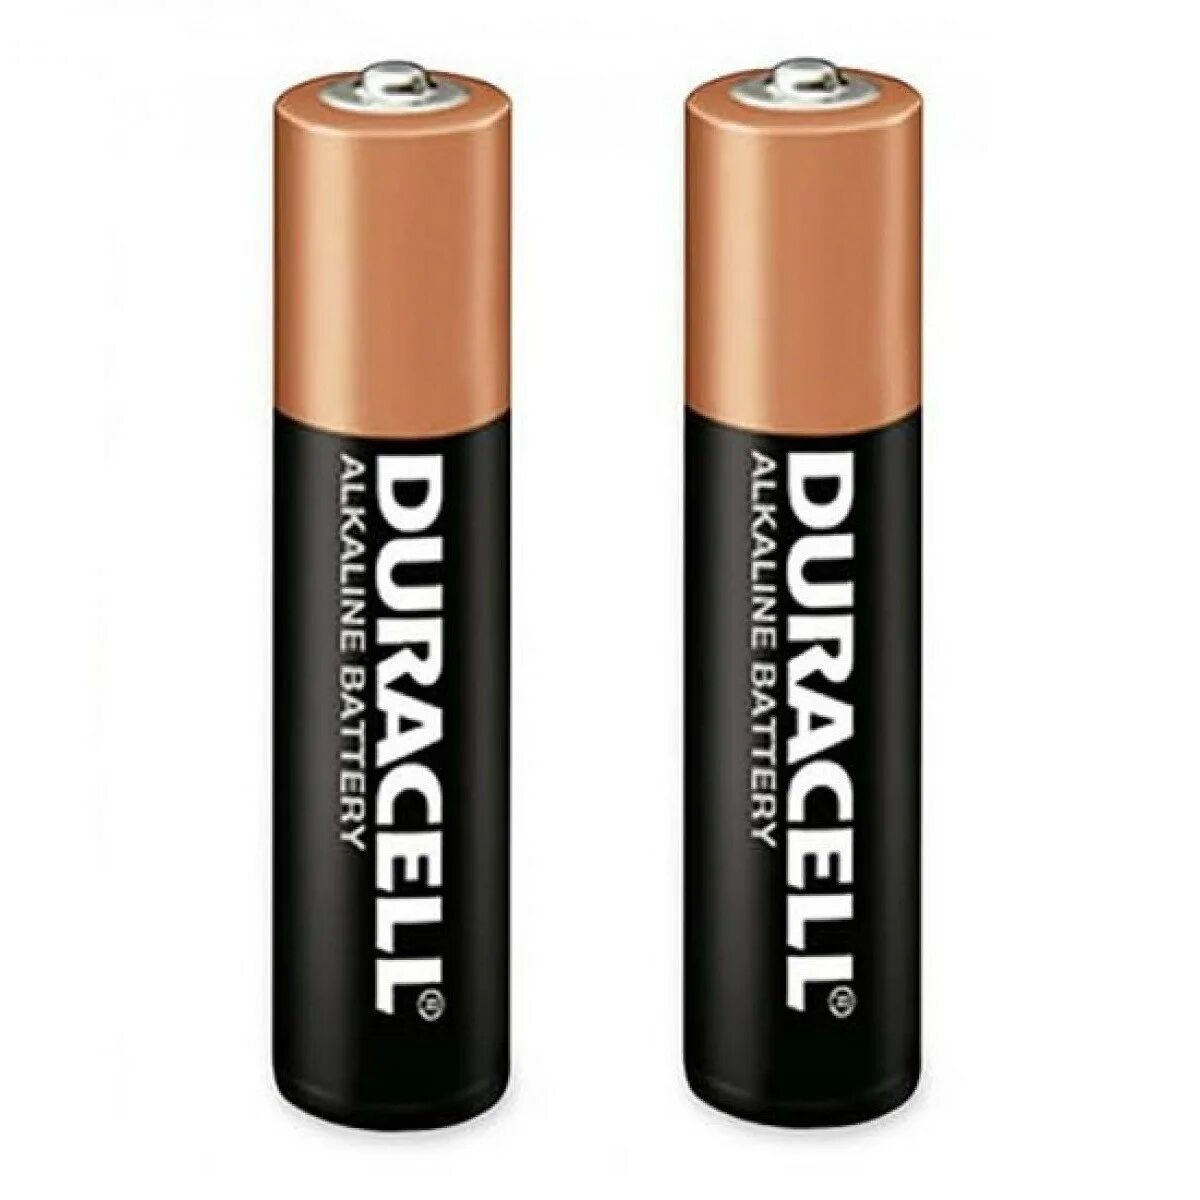 Батарейки Duracell AA lr3. 2 Батарейки ААА Дюрасел. Батарейка Duracell Basic AA. Элемент питания Duracell ААА.